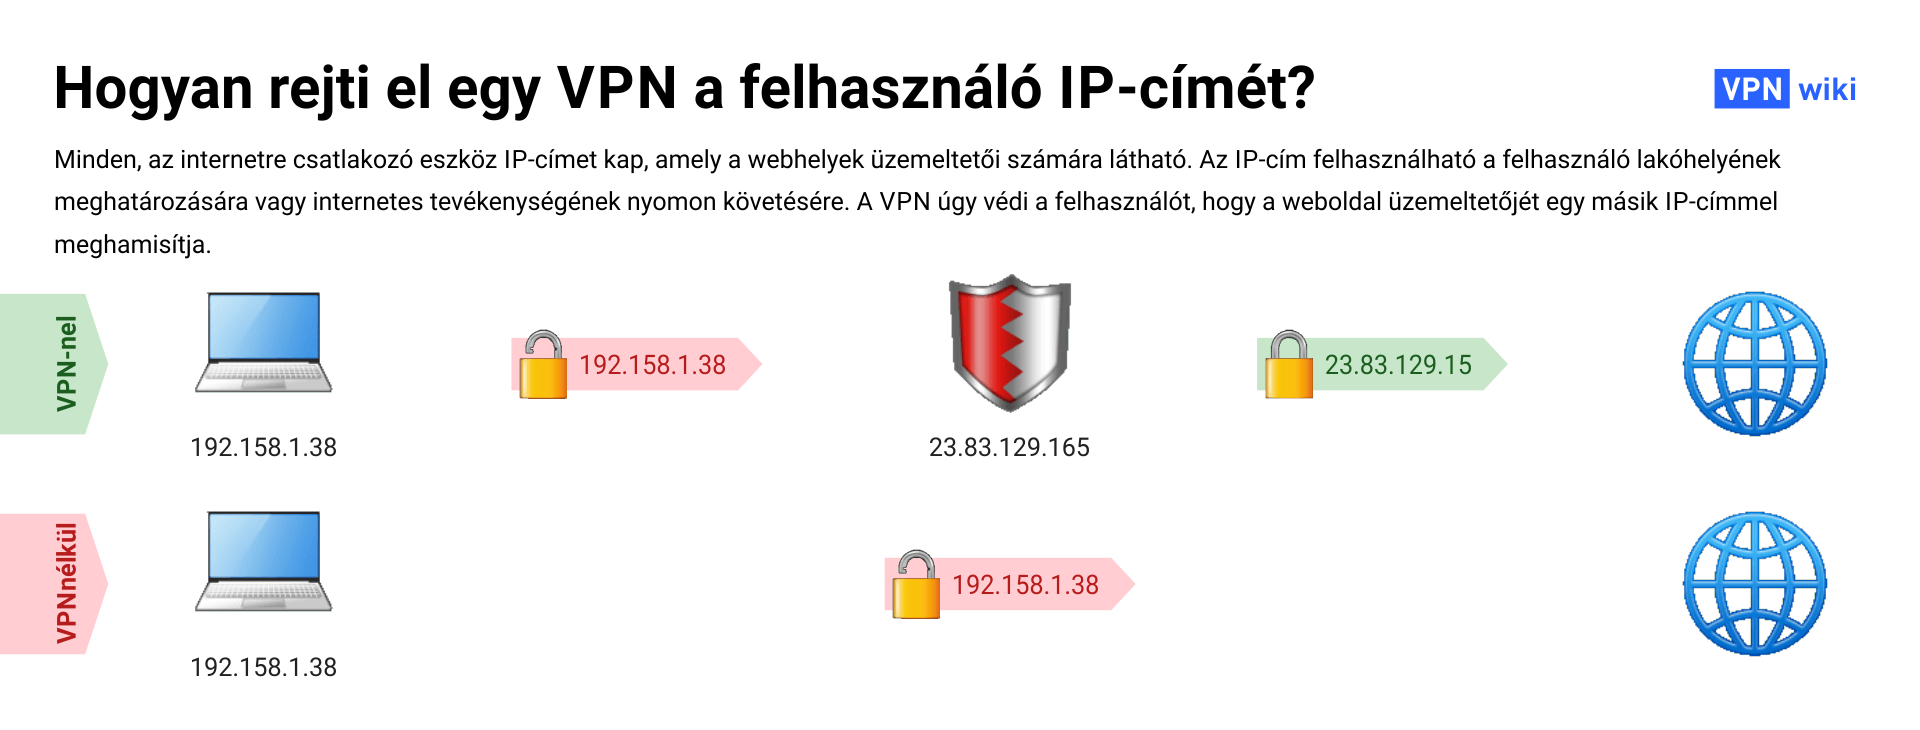 Mi a VPN és hogyan működik? 4 használati példa